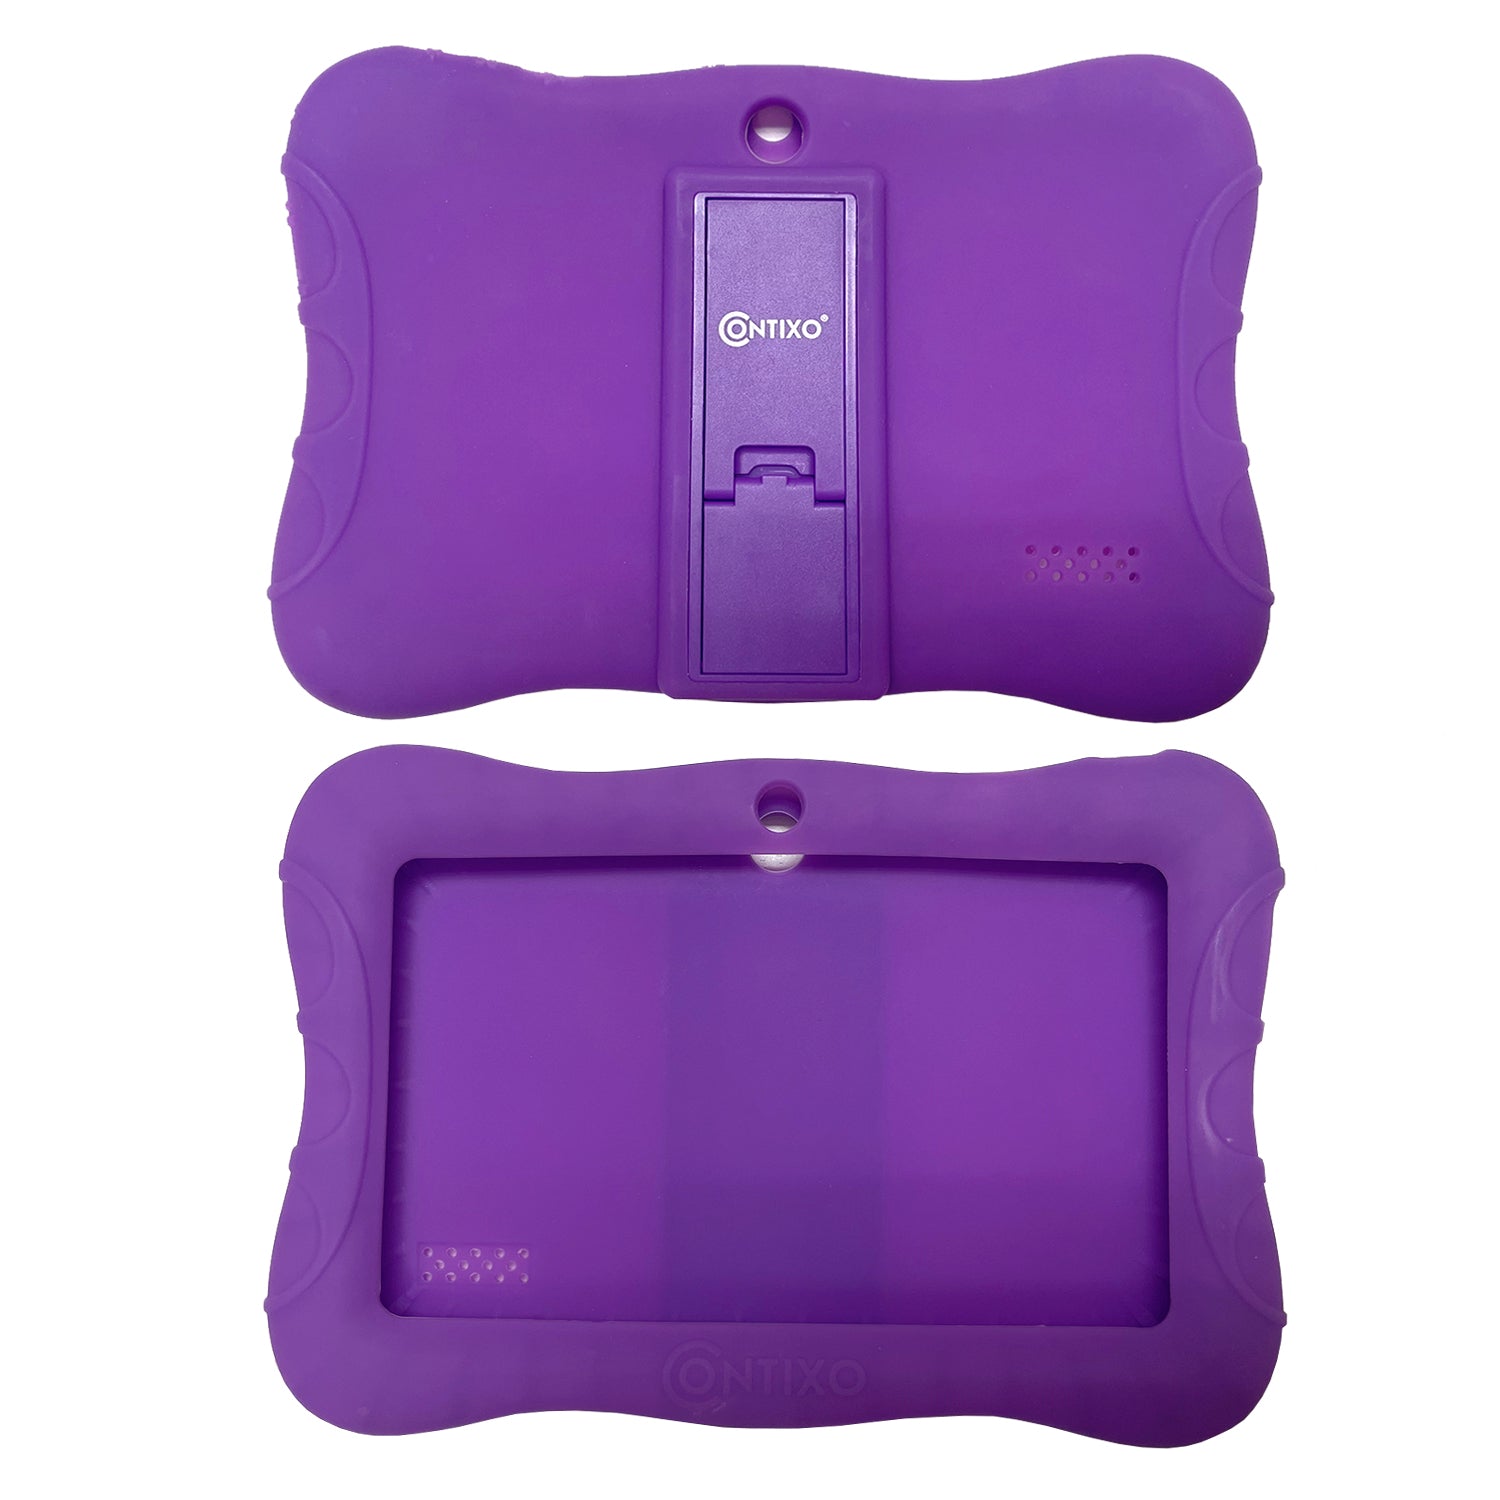 Contixo V9 Kids Tablet -Protective Silicon Case, Multi-Color